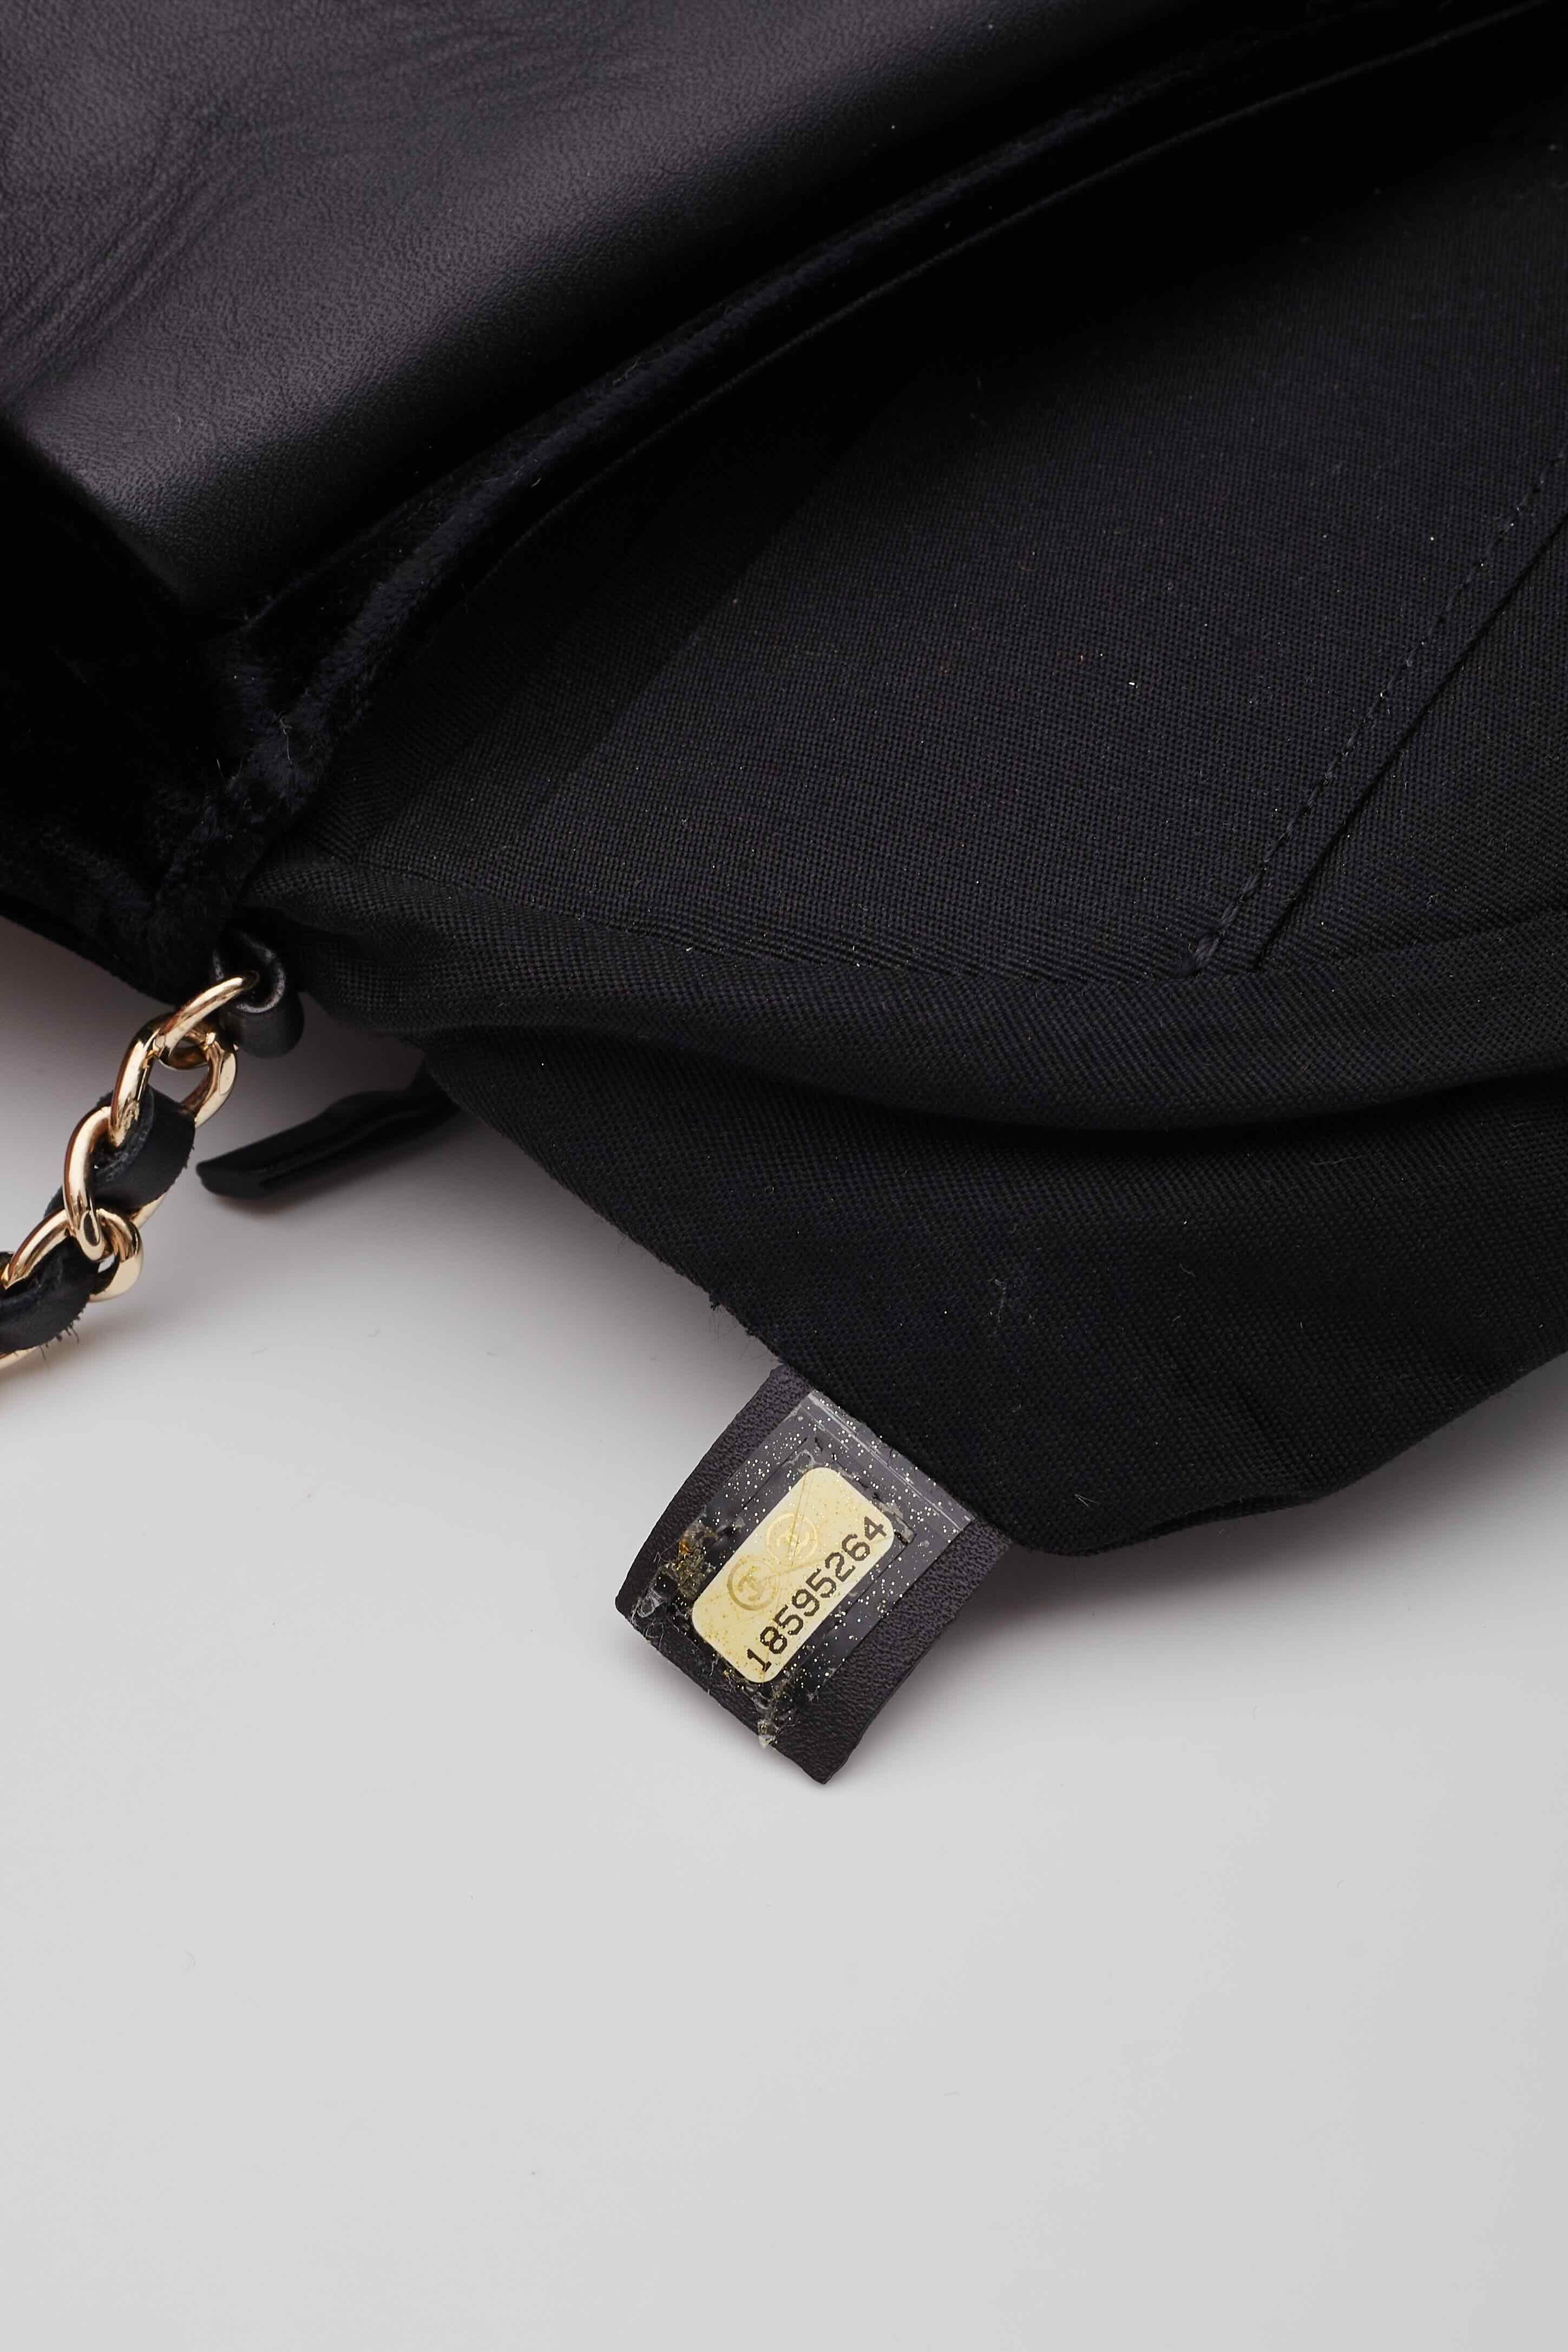 Chanel Velvet Half Moon Black Wallet on Chain Bag For Sale 5